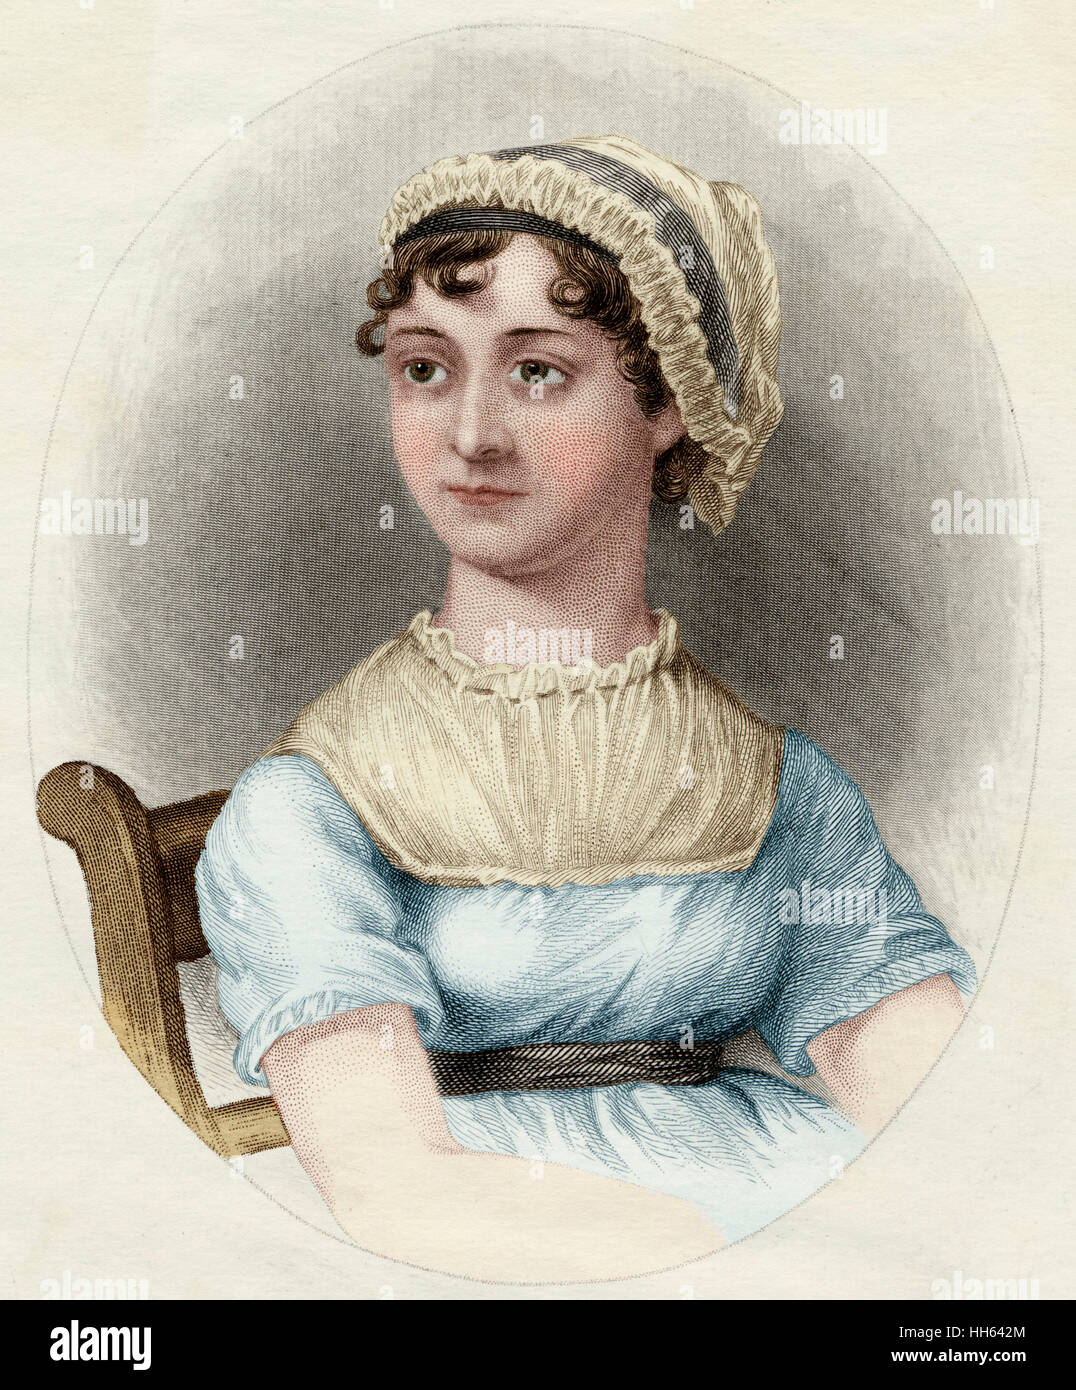 Jane Austen (1775-1817) - romancier anglais. Banque D'Images